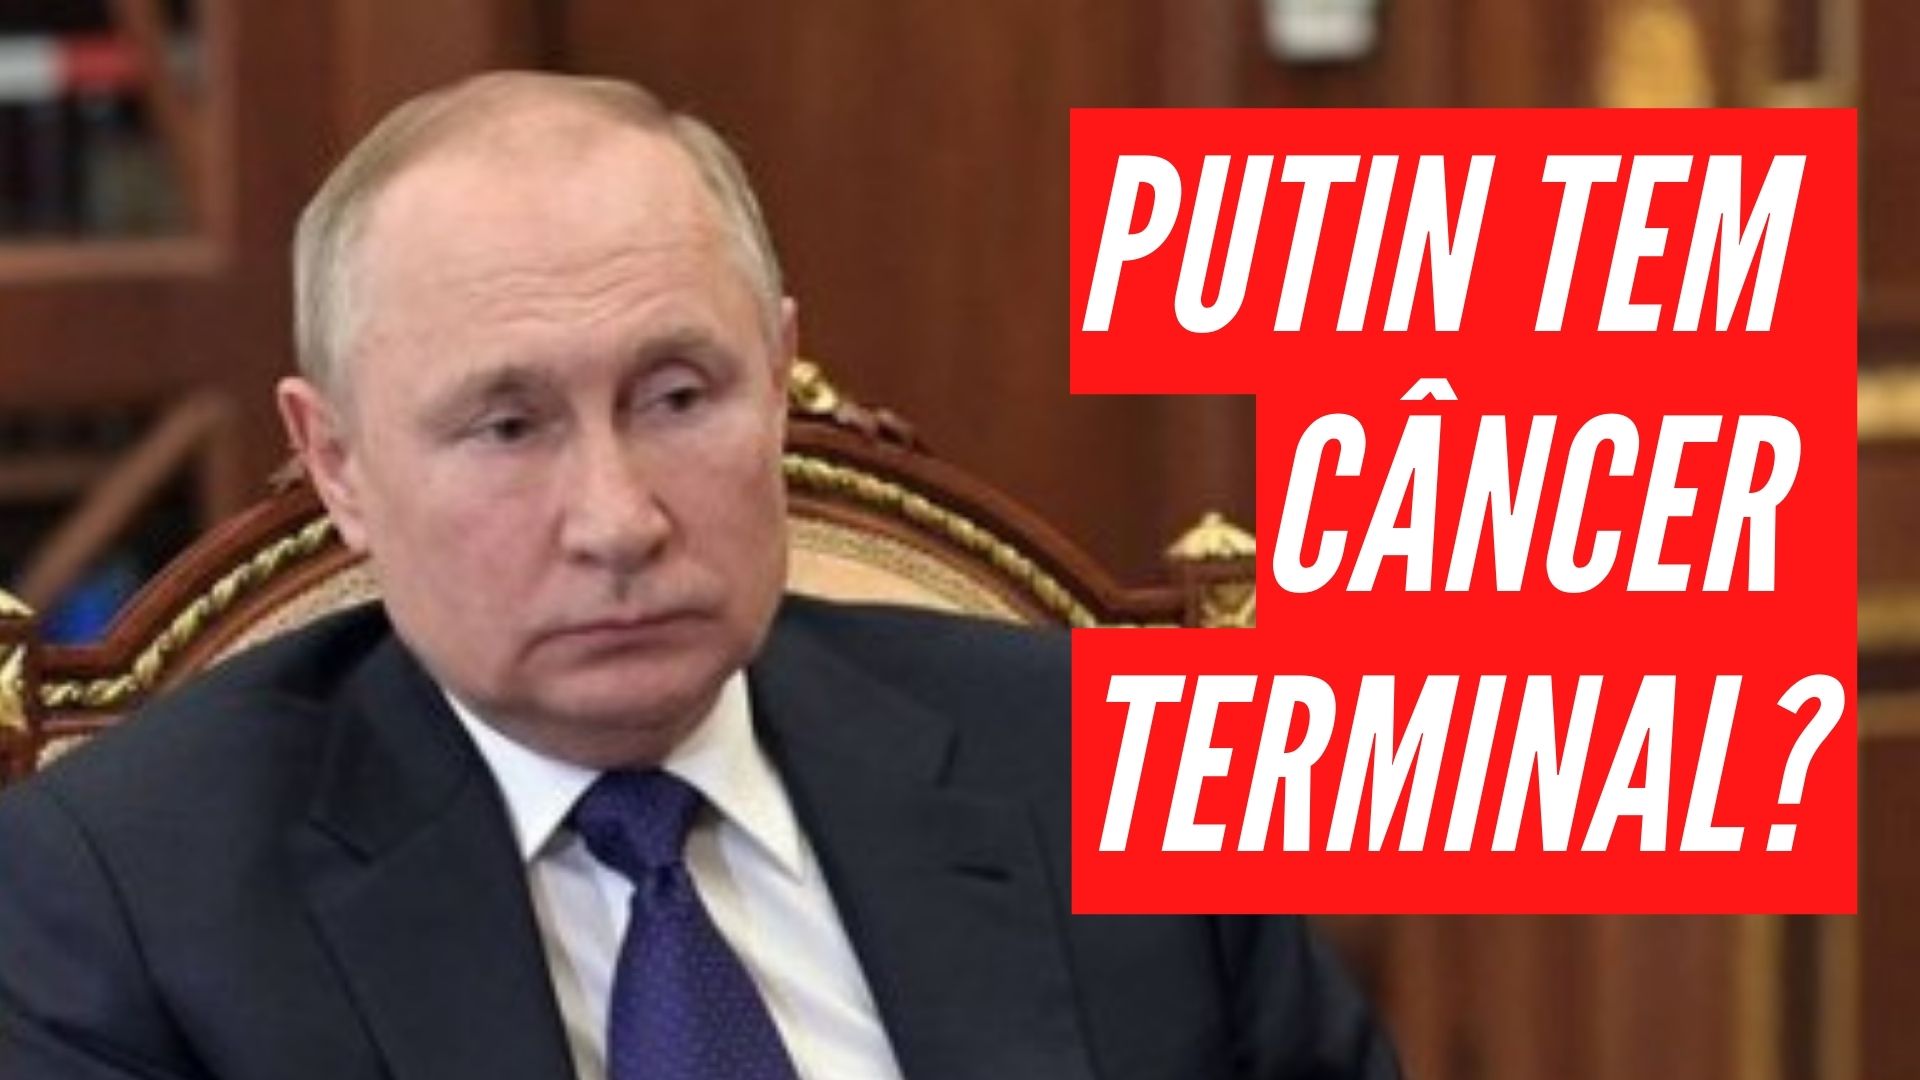 [VIDEO] O presidente da Rússia está mesmo com câncer terminal?